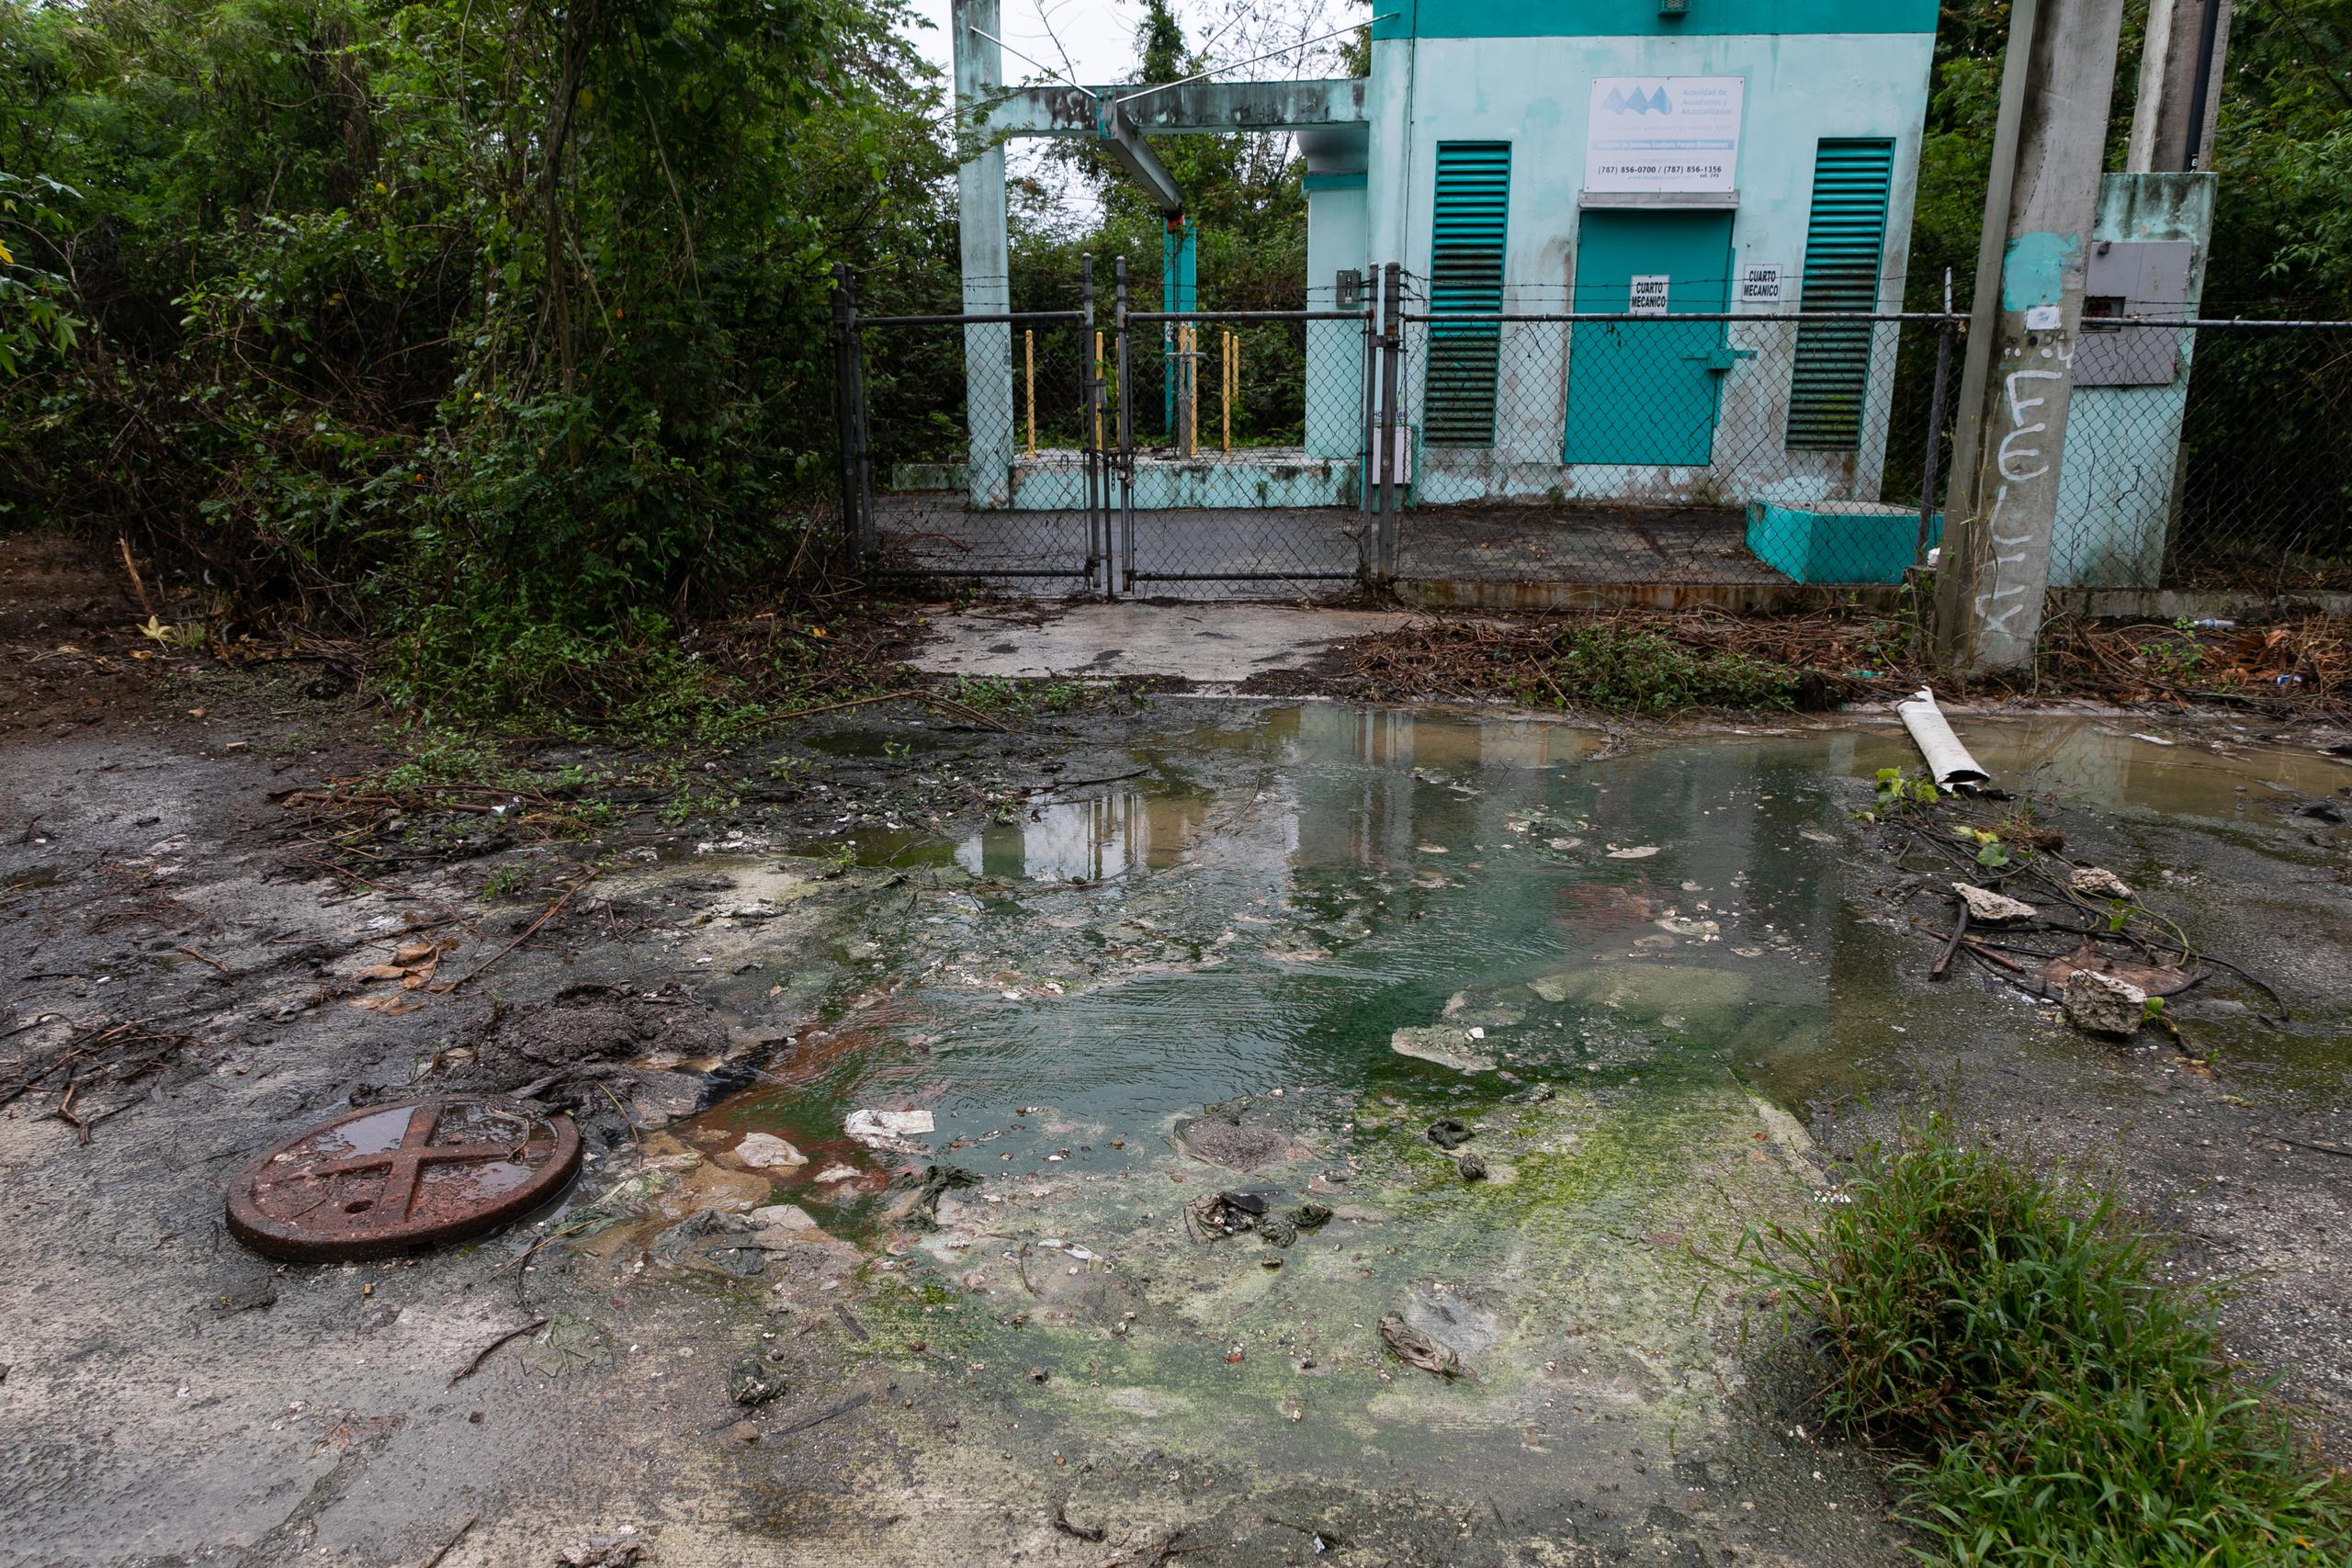 Las descargas de aguas sanitarias no tratadas a través de una estación de bombeo sin el permiso correspondiente constituyen una violación de la Ley Federal de Agua Limpia.